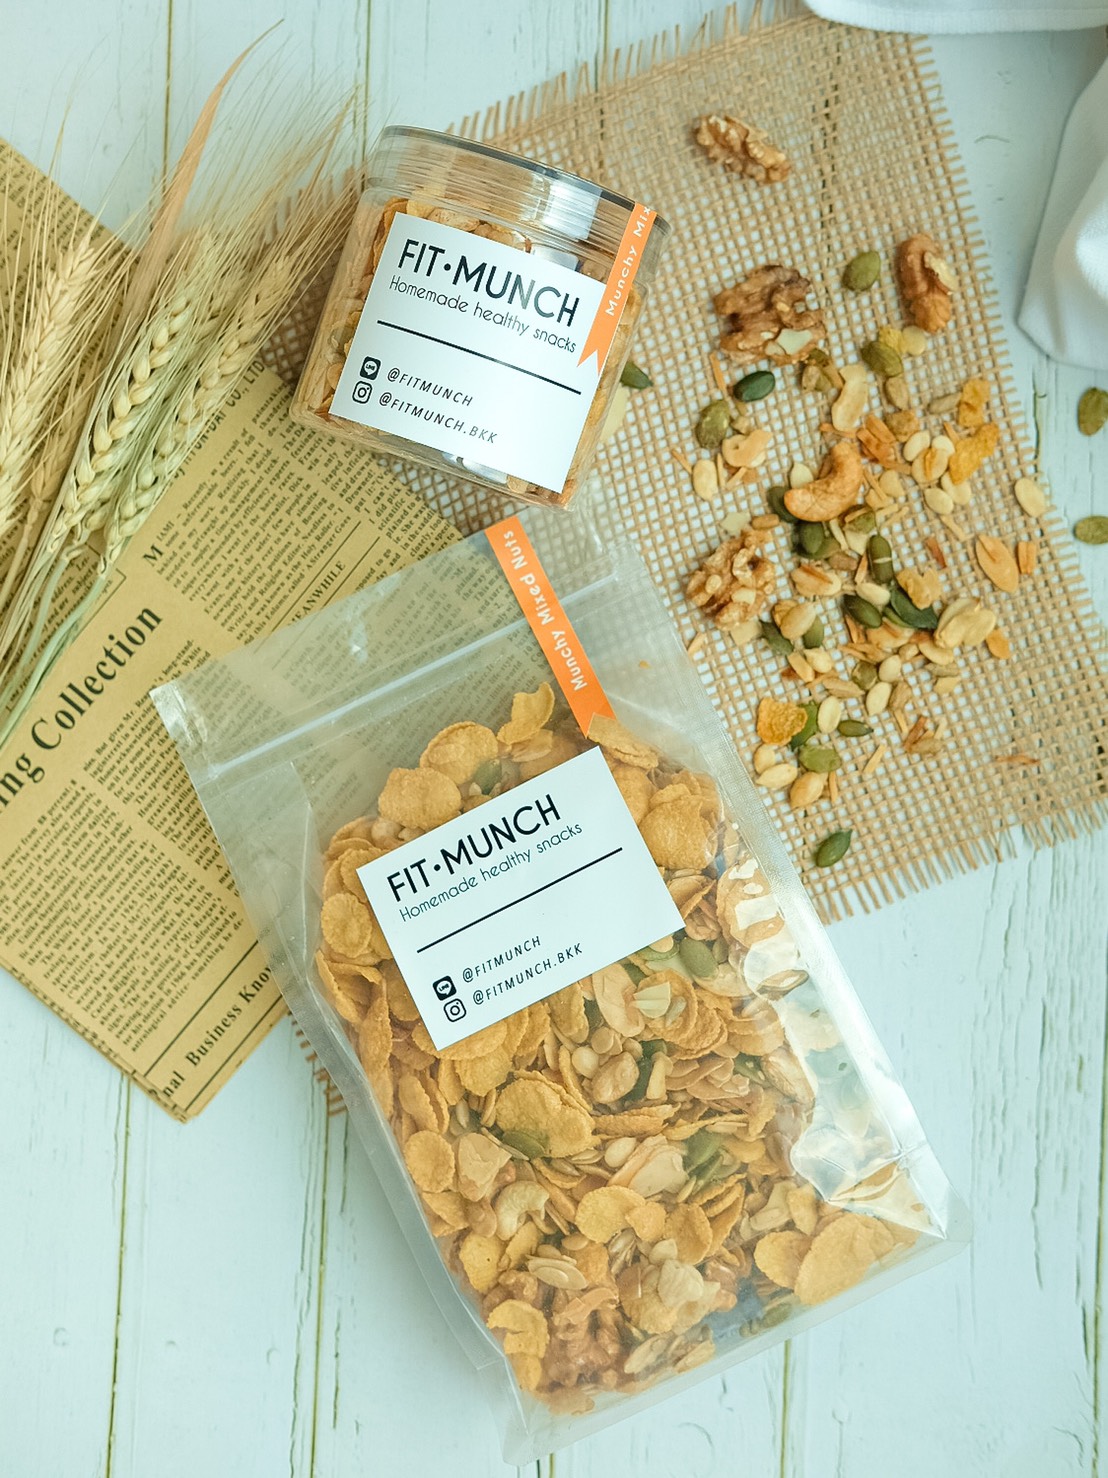 [Value Size] Fitmunch Munchy Mixed Nuts ถั่วและธัญพืชอบกรอบเพื่อสุขภาพ (ซีเรียล คอนเฟลค กราโนล่า อัลมอนด์อบ)